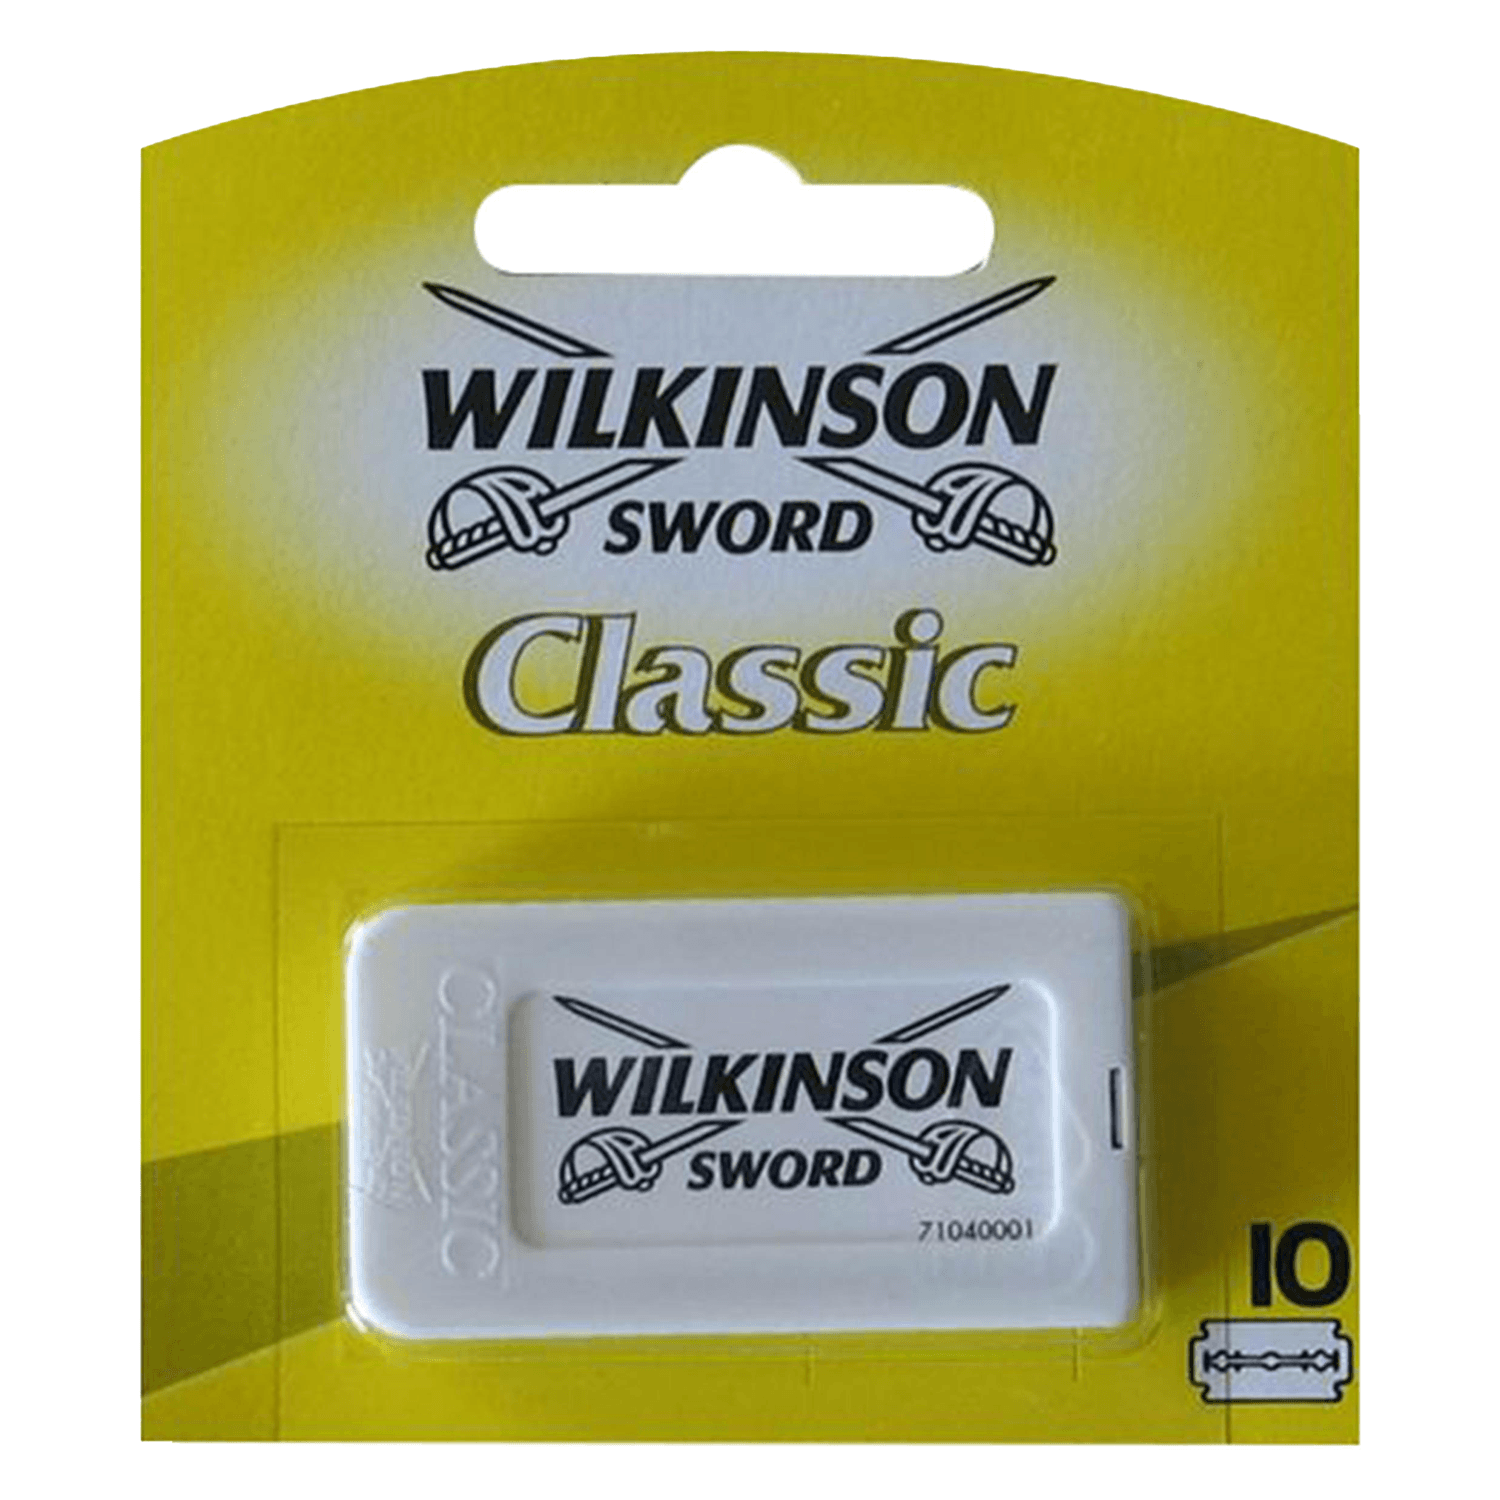 Wilkinson Classic - Razor Blades